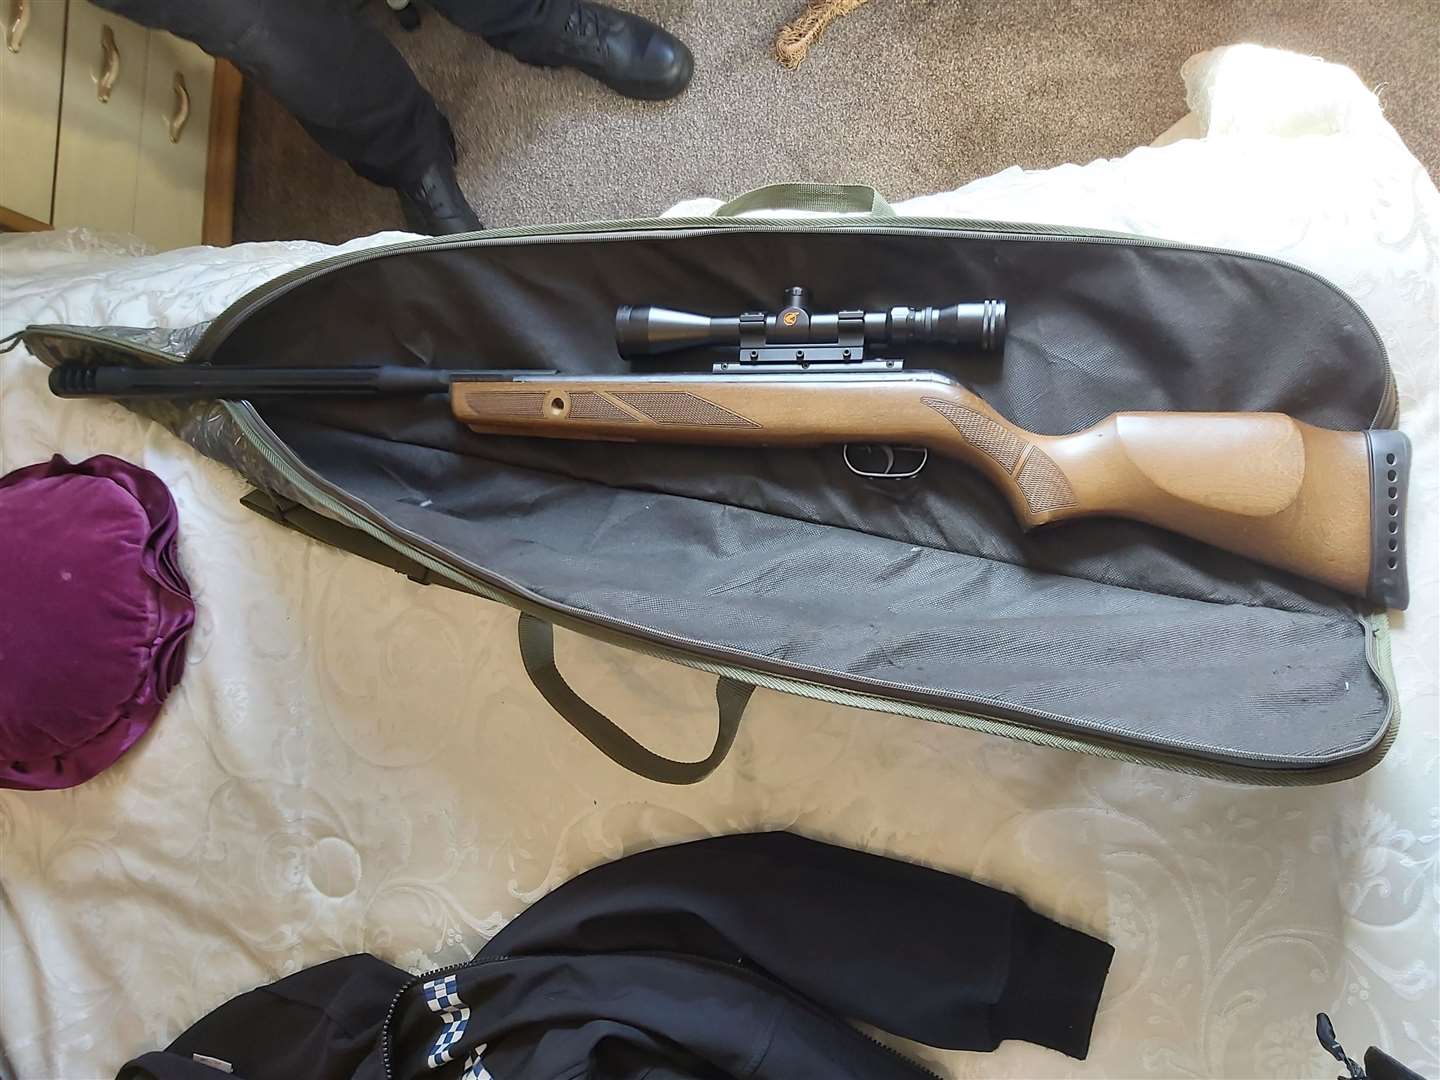 A firearm seized during the raid